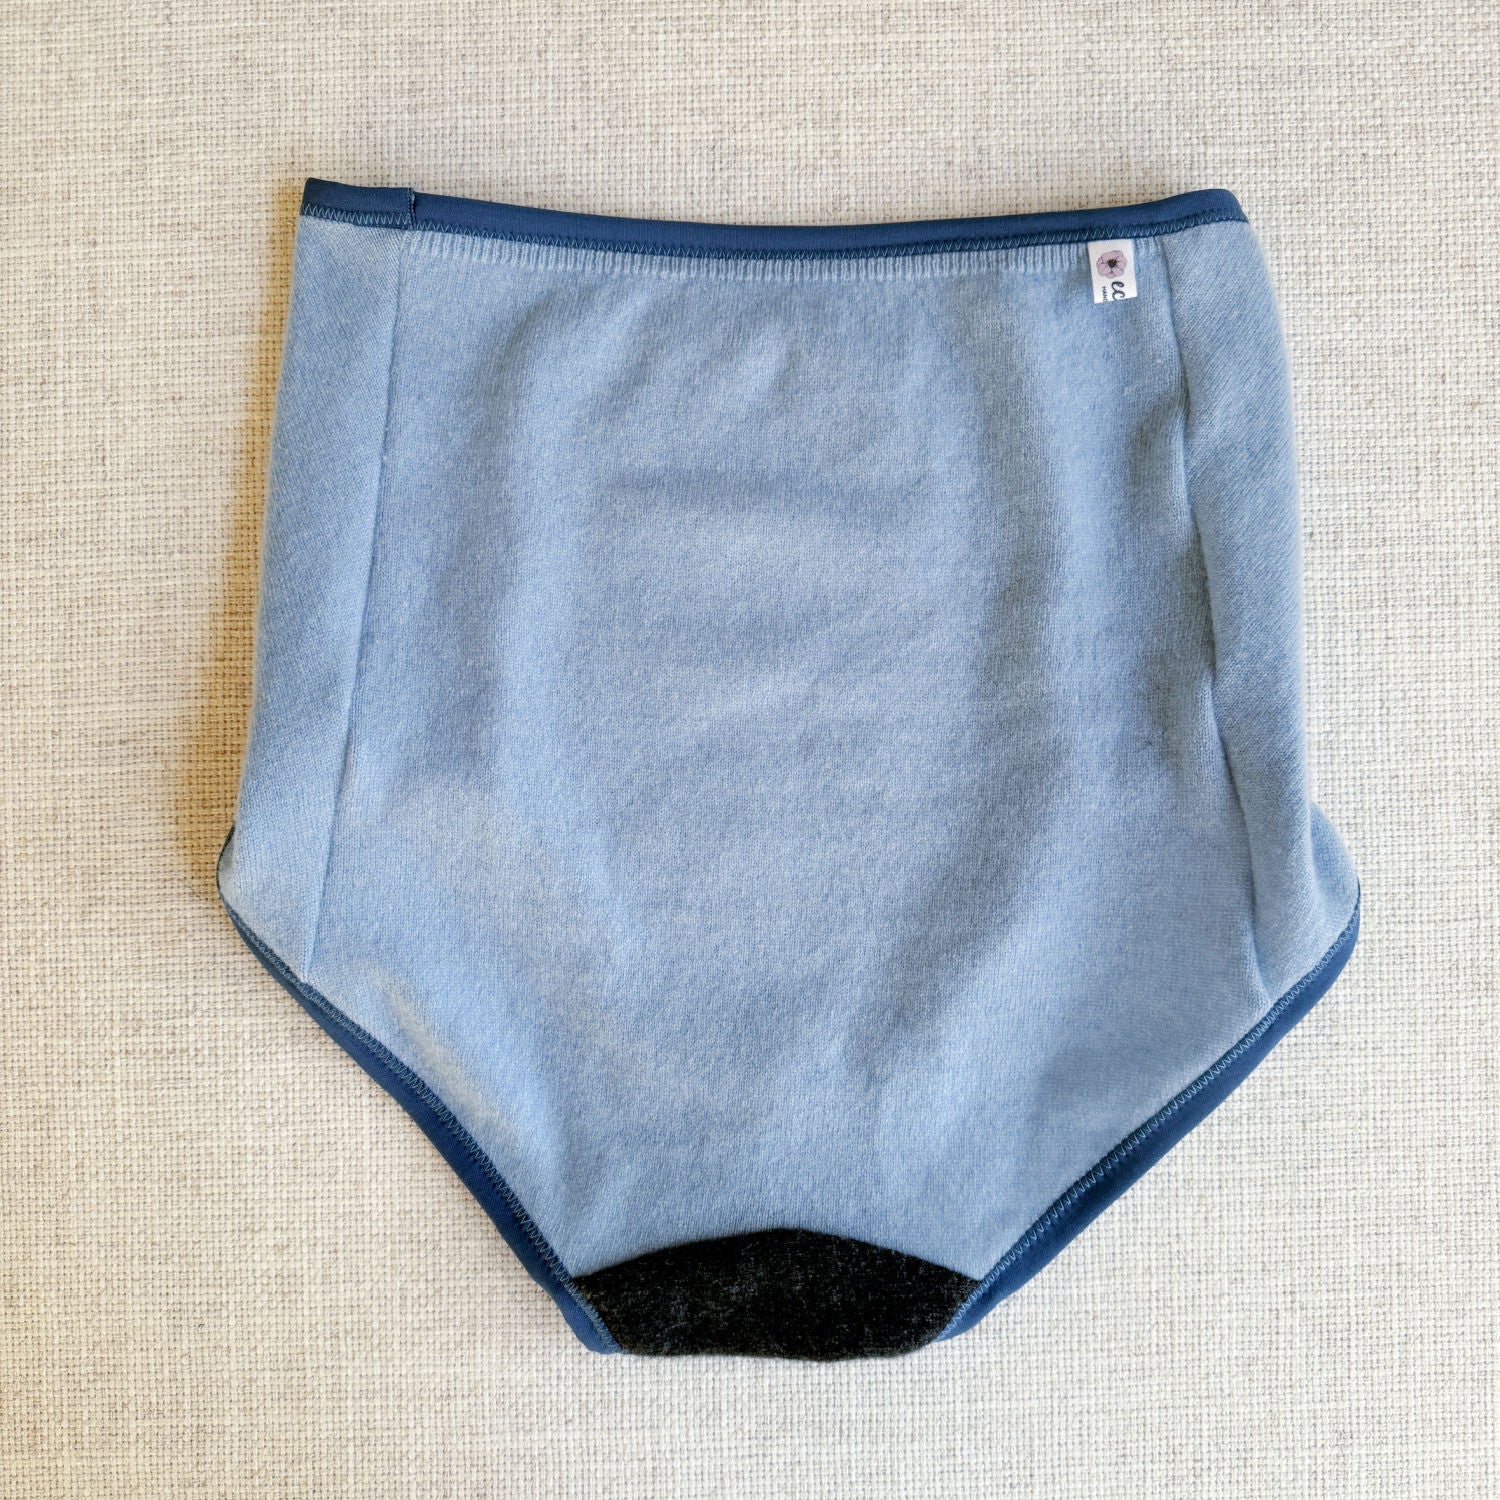 cashmere french brief, cashmere underwear for women